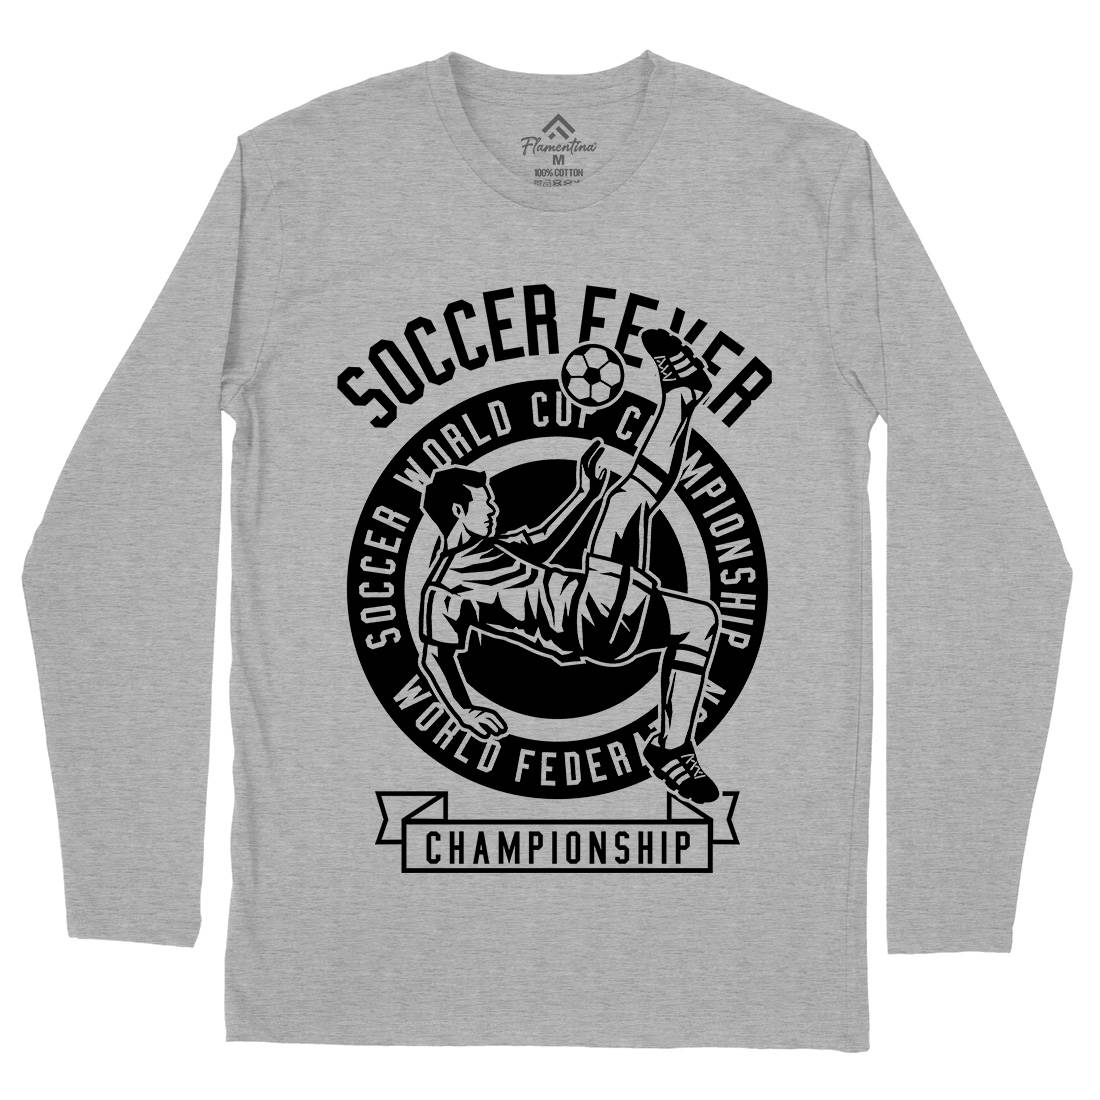 Soccer Fever Mens Long Sleeve T-Shirt Sport B634